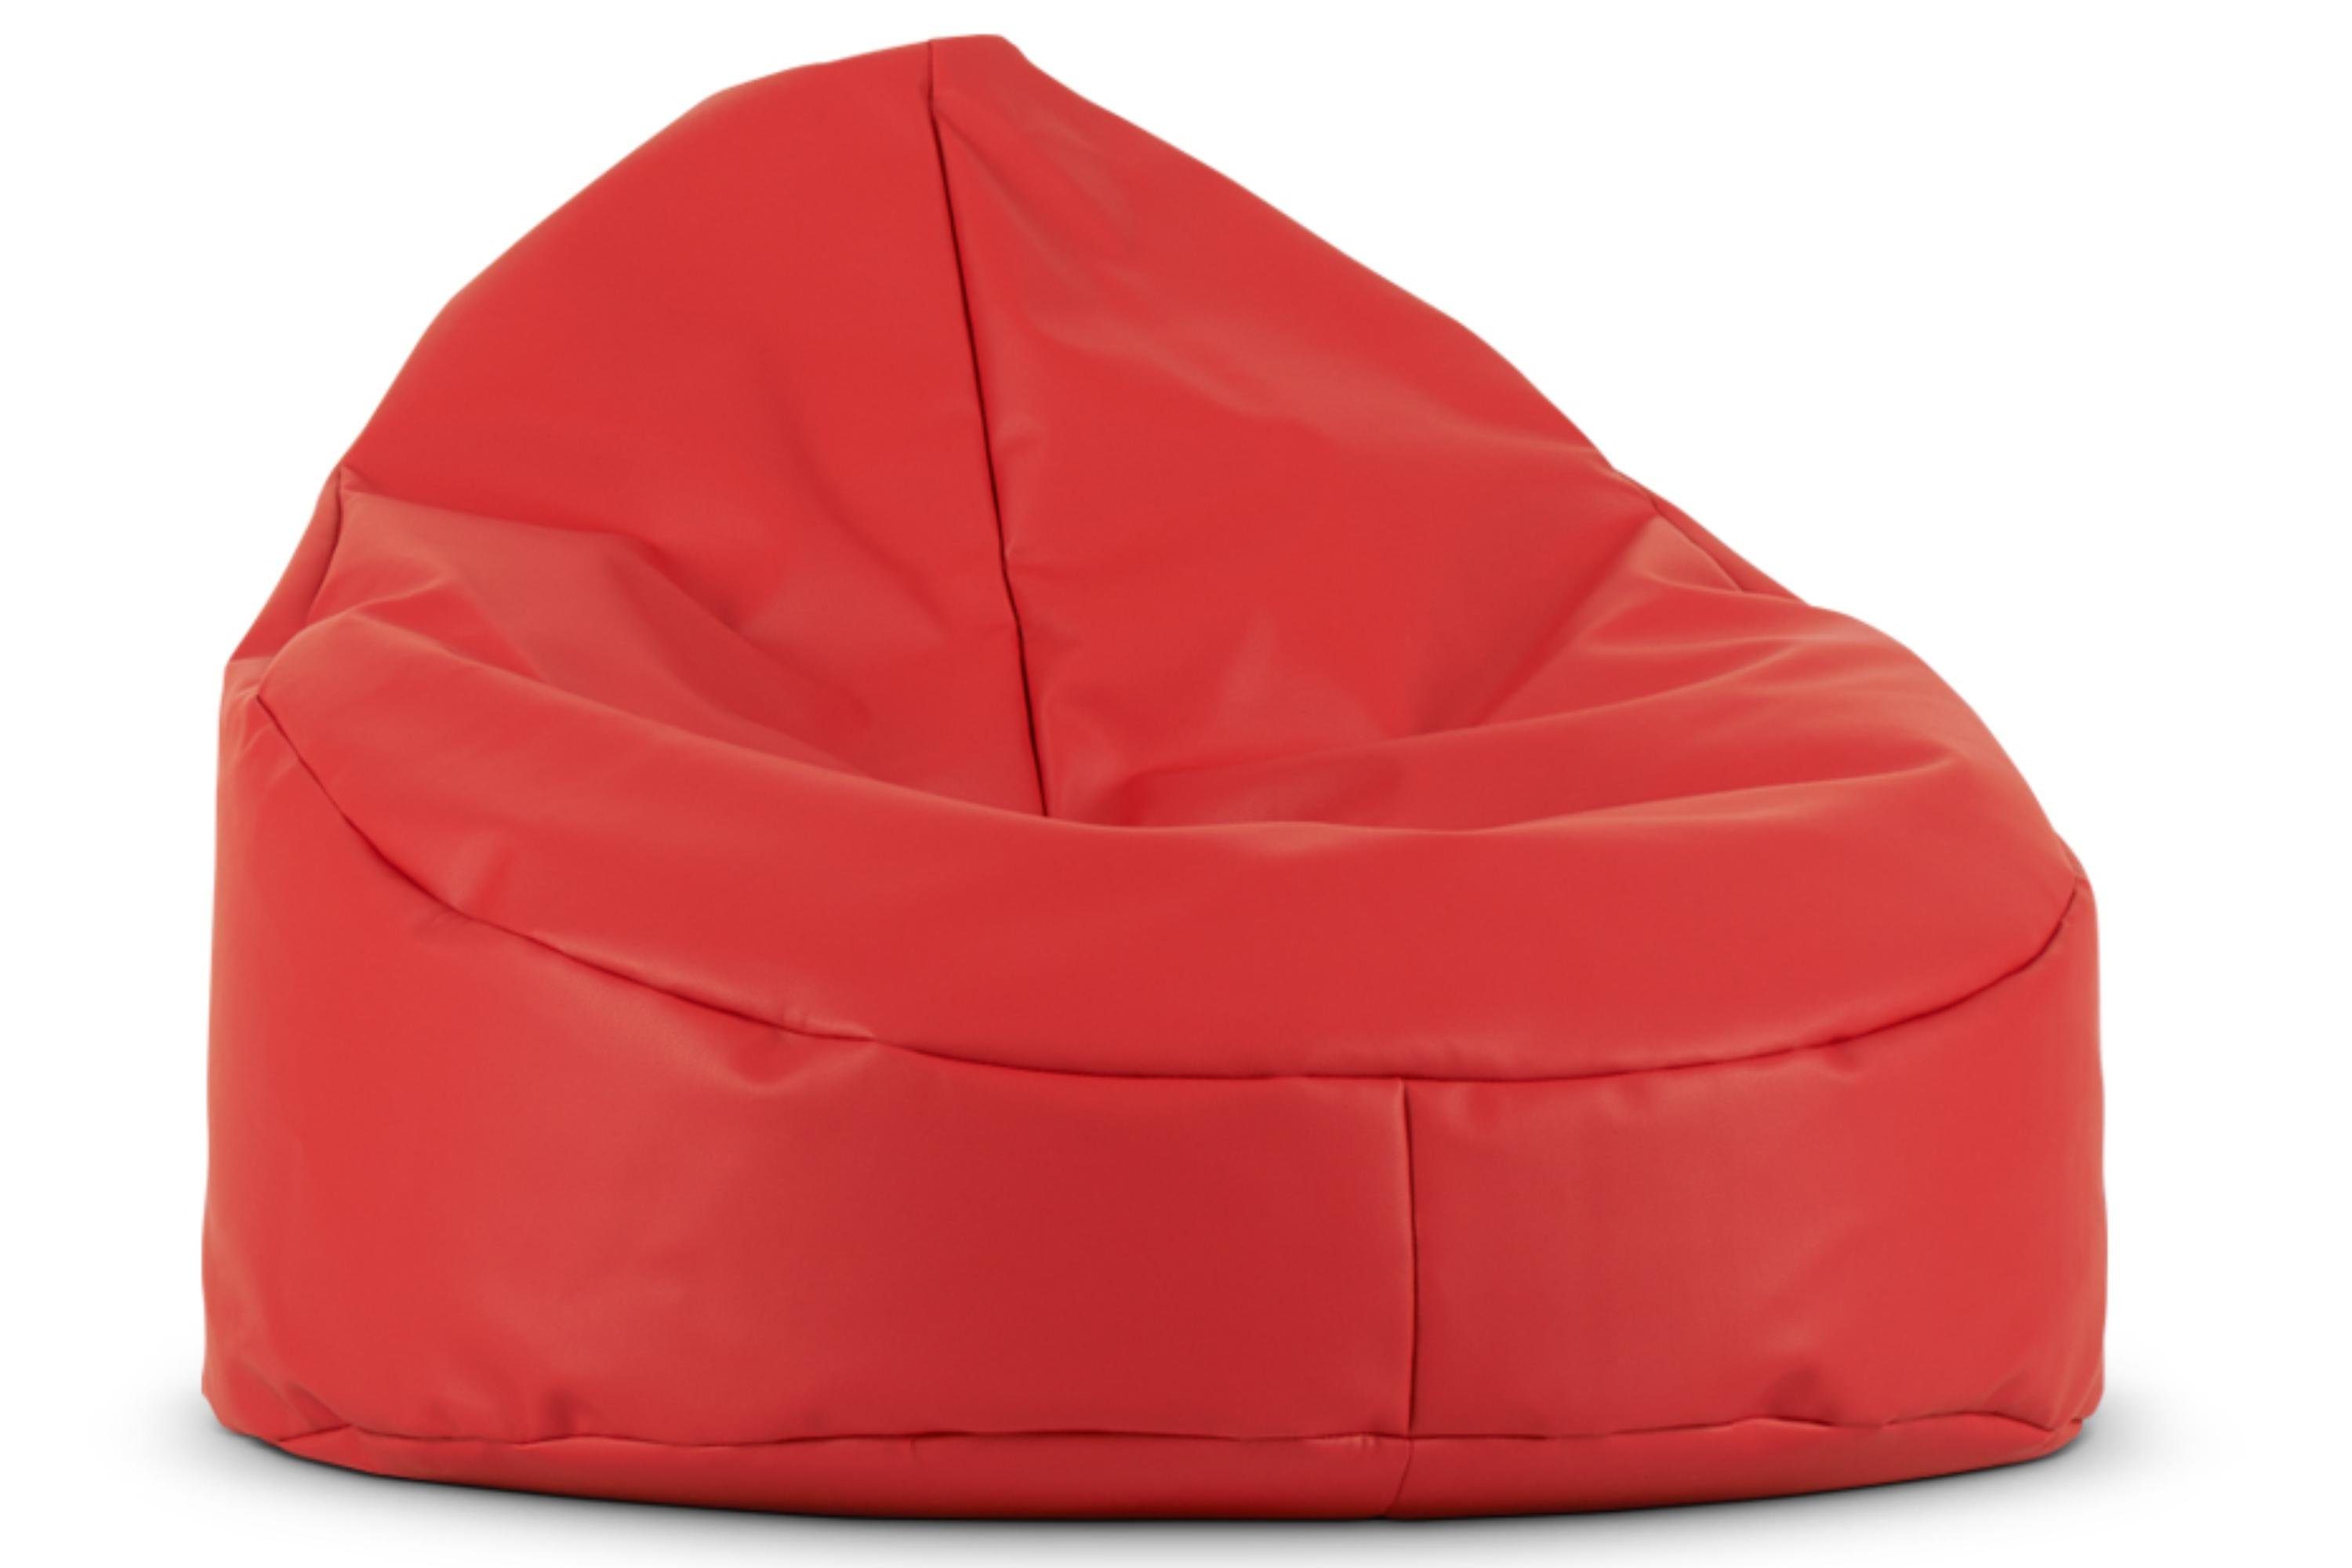 Zum supergünstigen Preis angeboten Konsimo Sitzsack COSMO Sitzhocker Sitzpouf, rot gefüllt, zeitloses Design mit Polystyrolkugeln